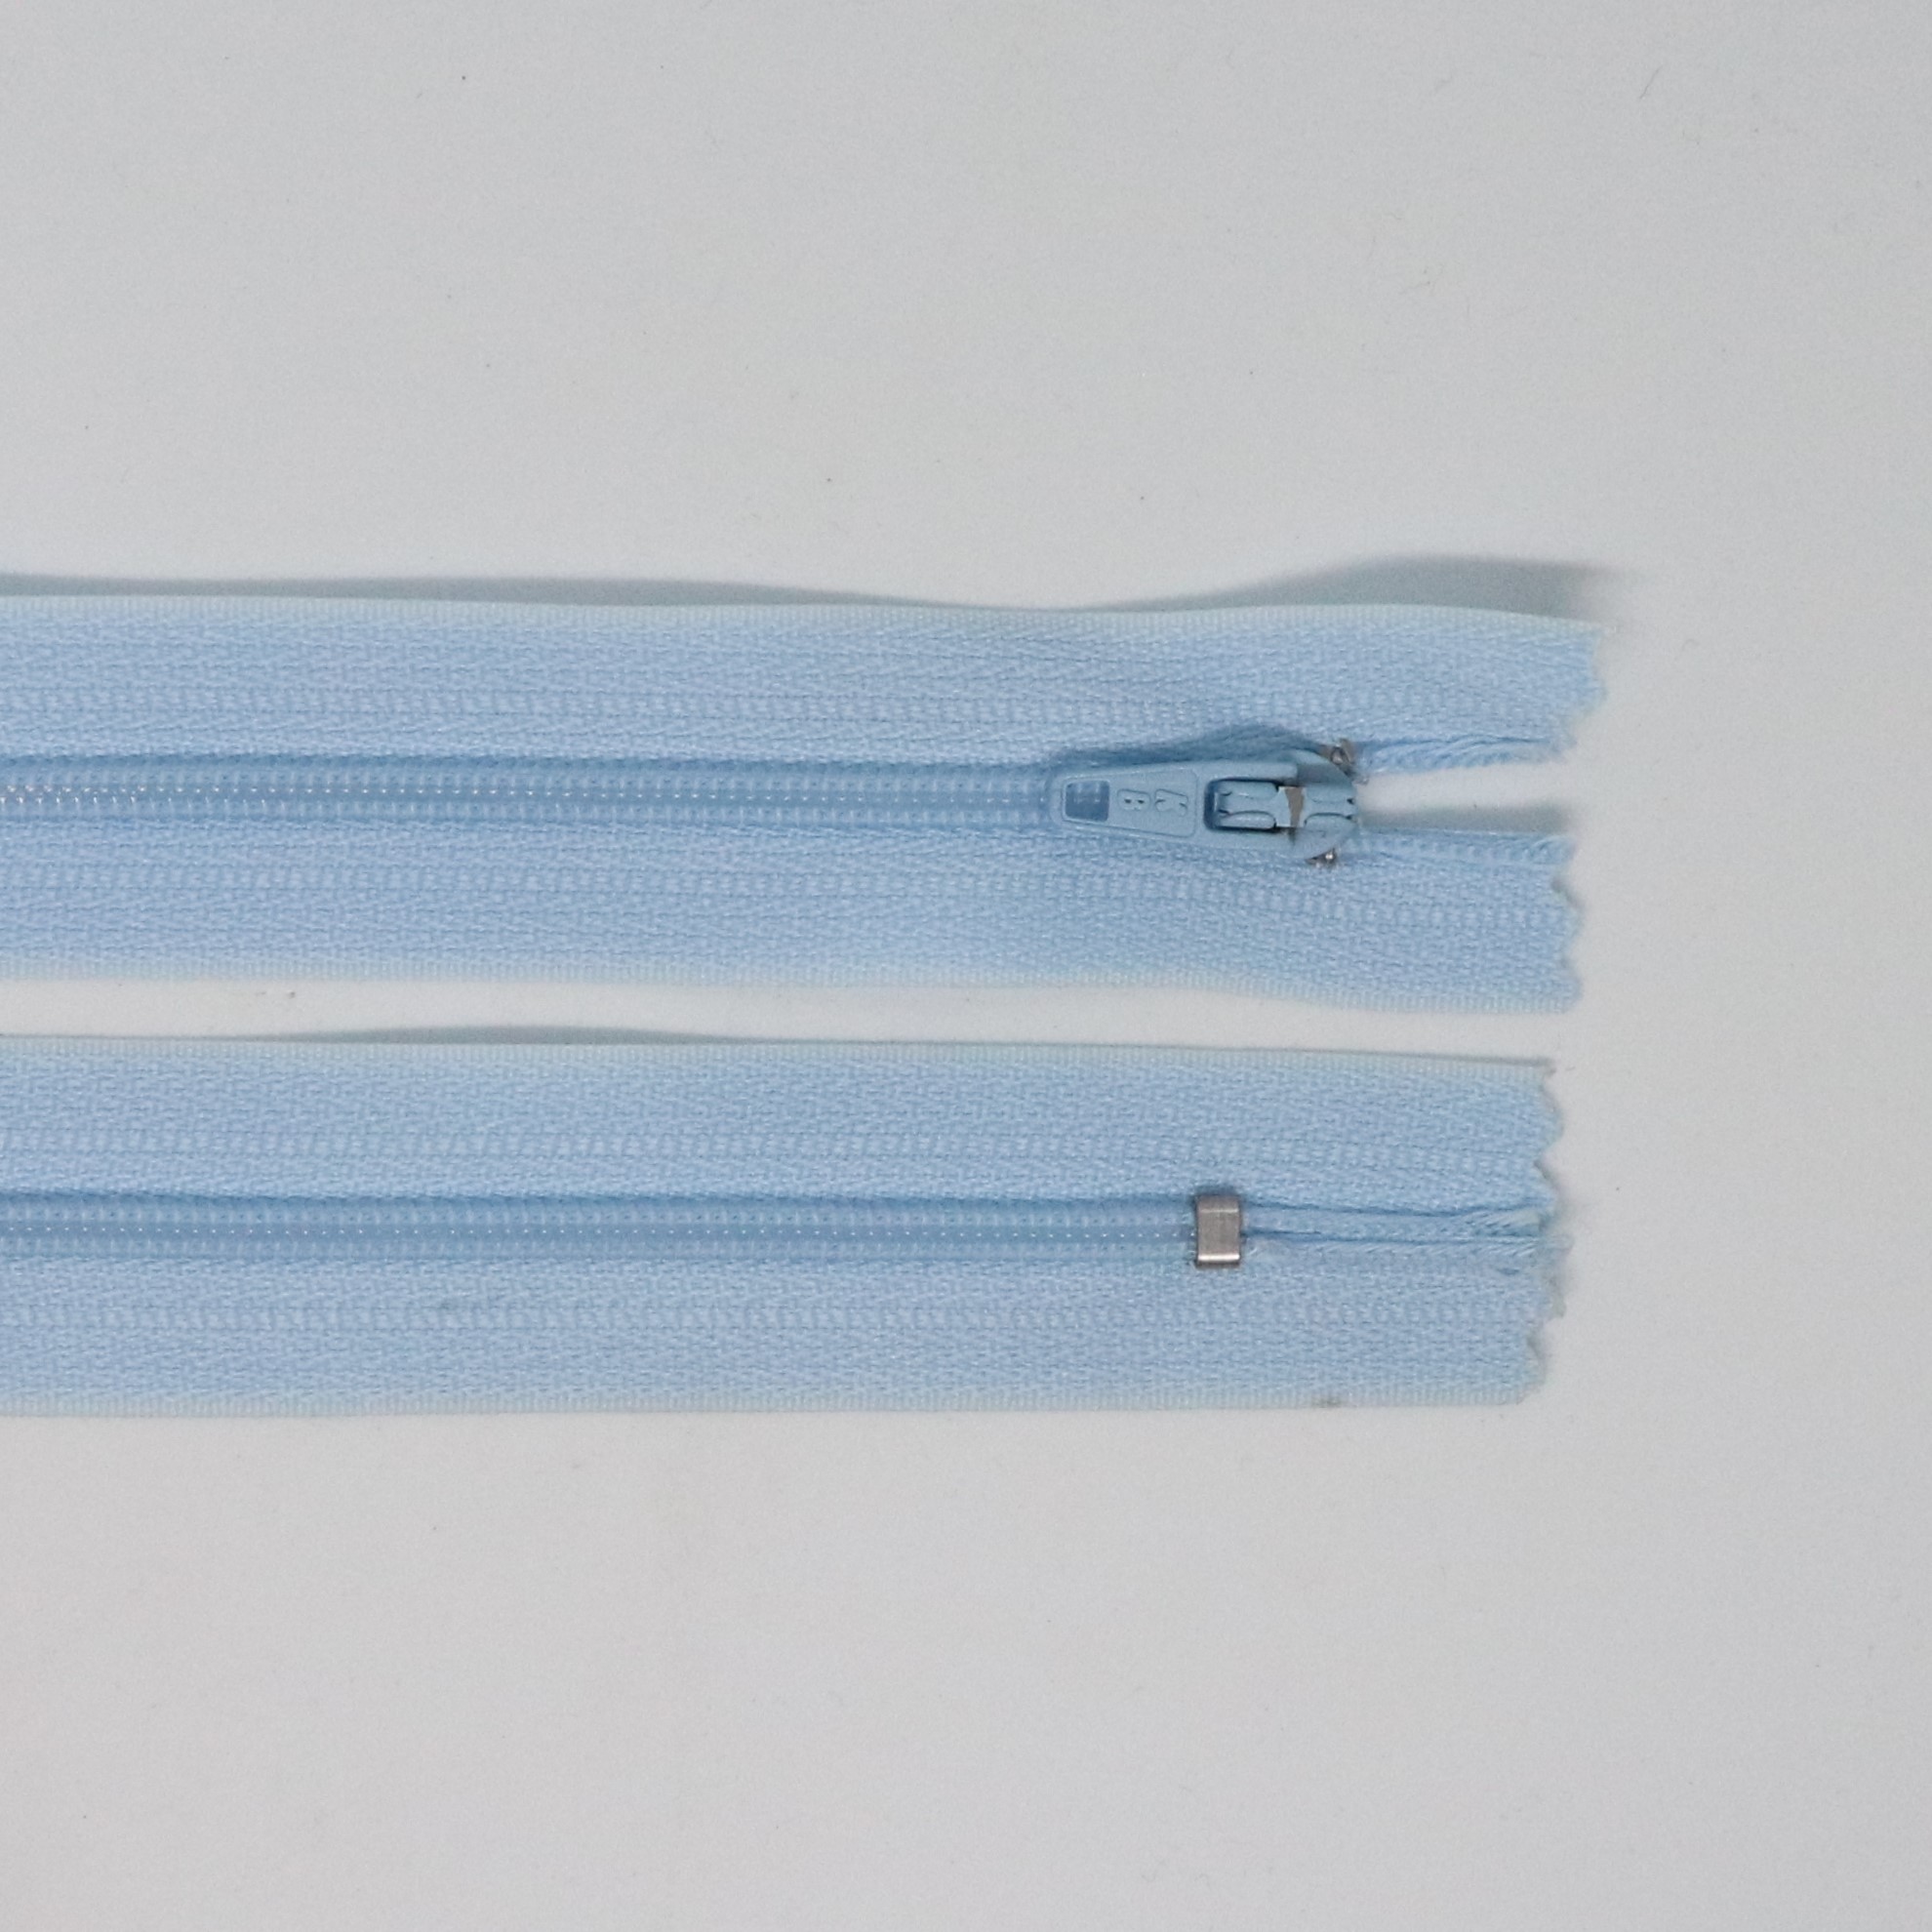 Spirálový zip, šíøe 3 mm, délka 35 cm, svìtle modrá - zvìtšit obrázek